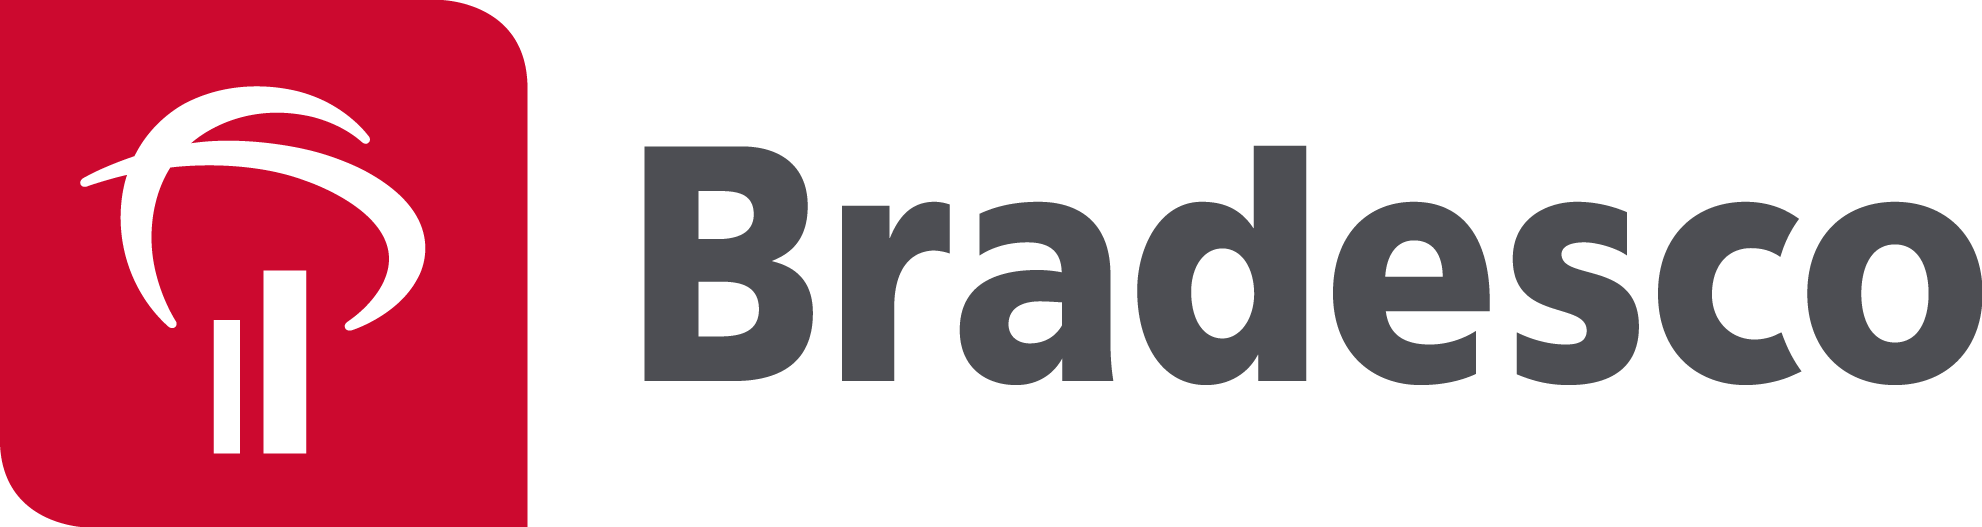 Banco Bradesco logo